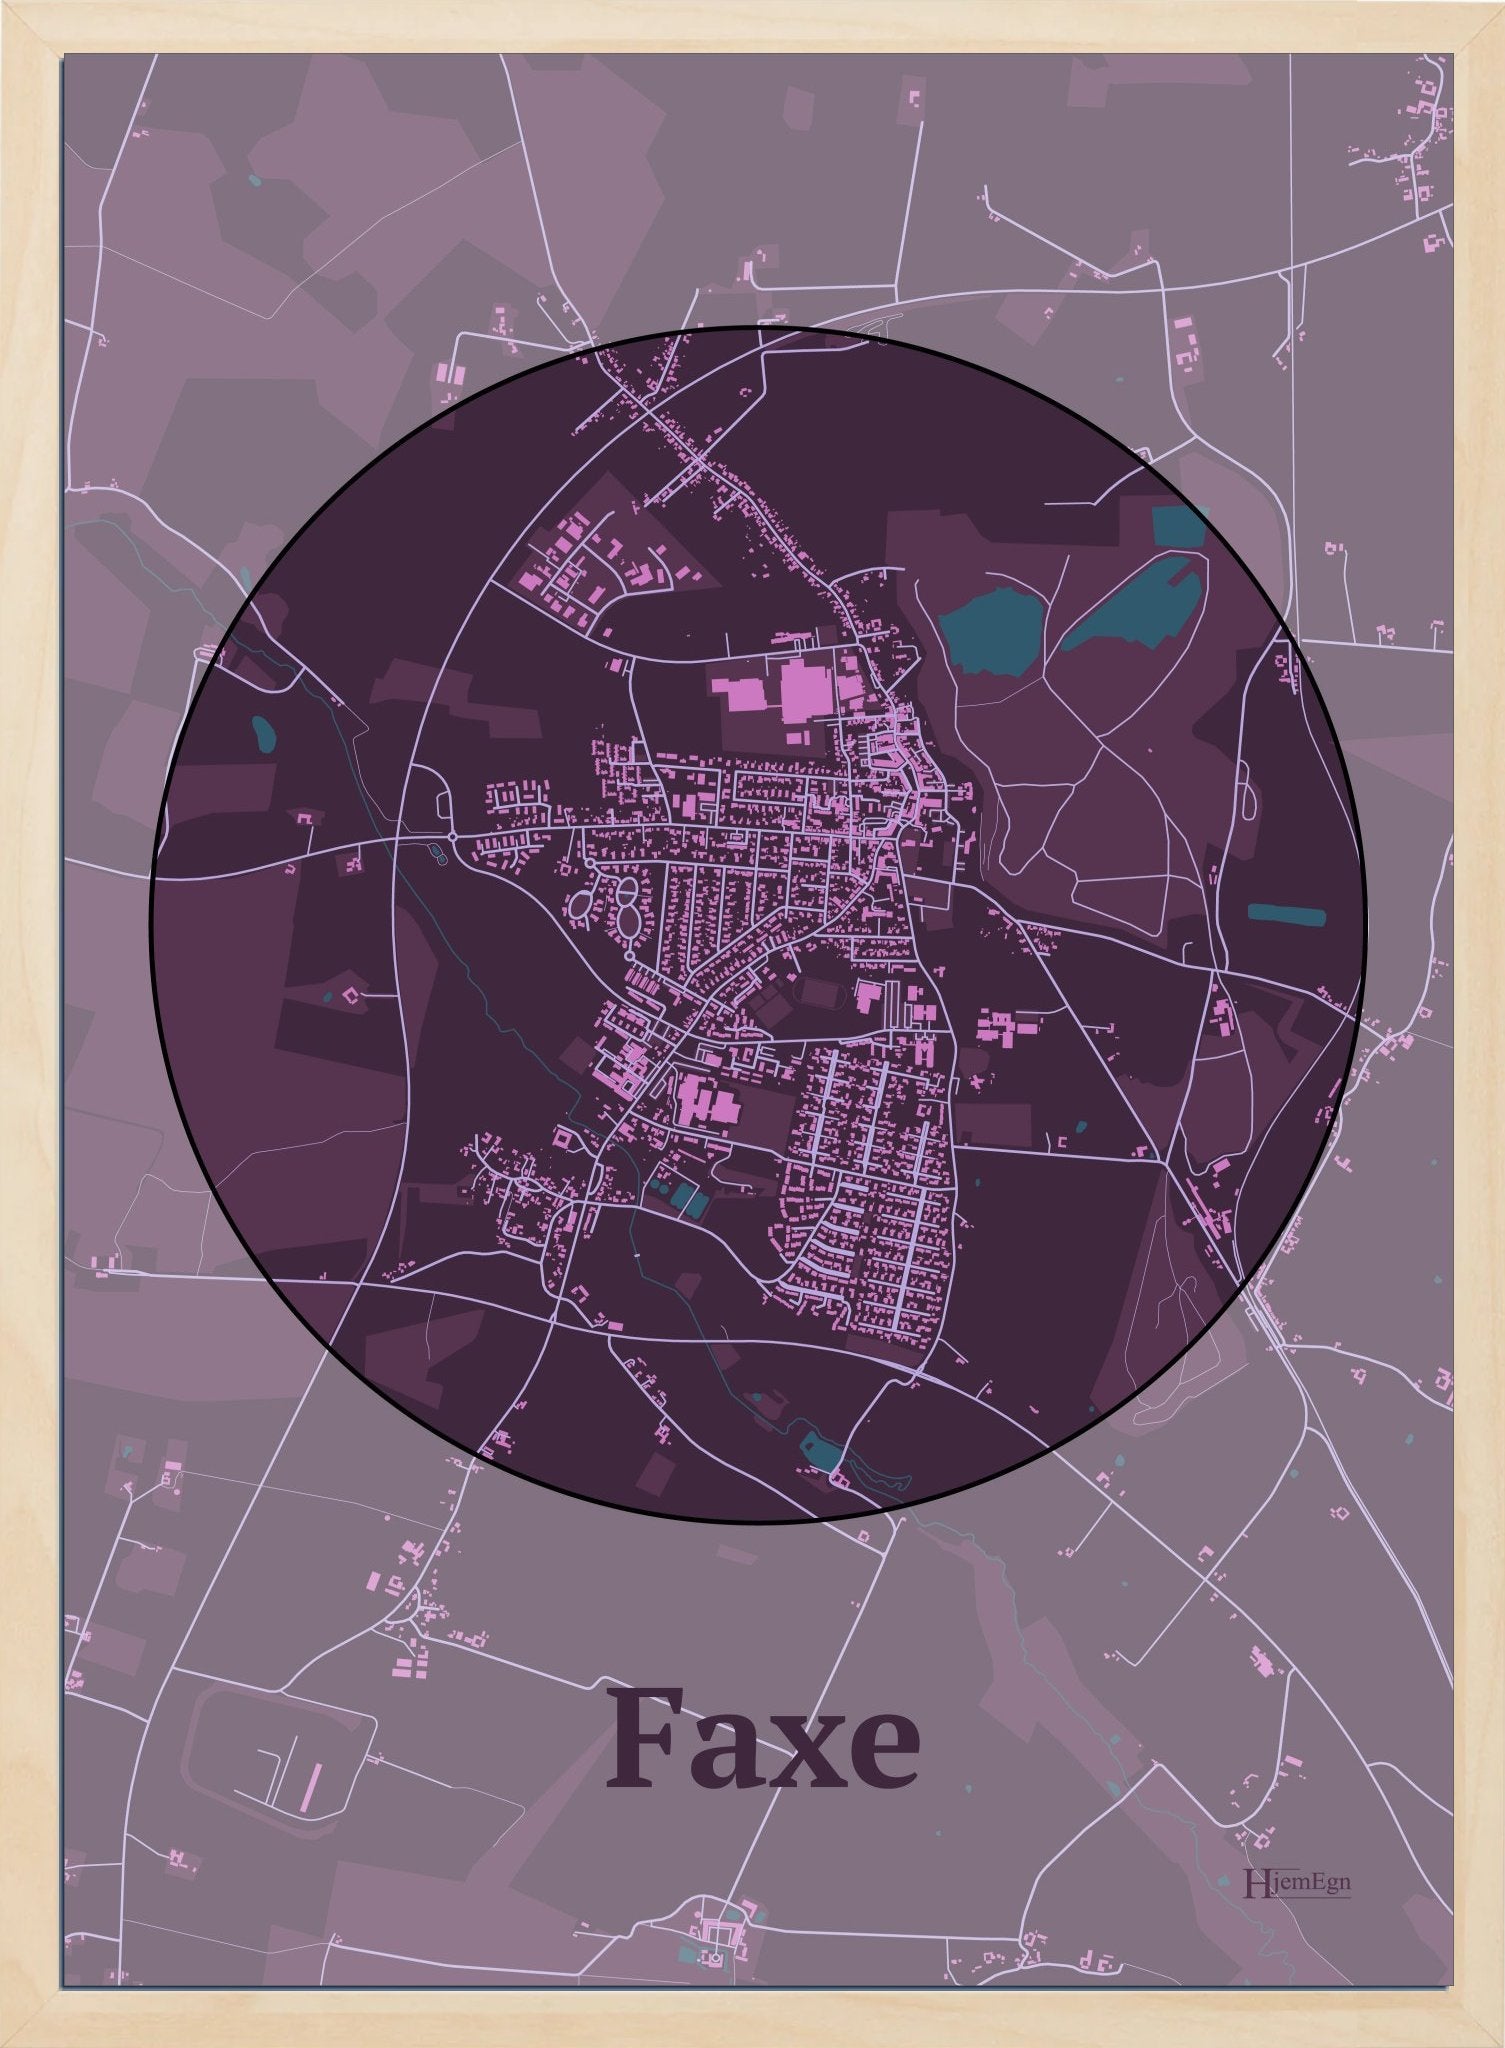 Faxe plakat i farve mørk rød og HjemEgn.dk design centrum. Design bykort for Faxe